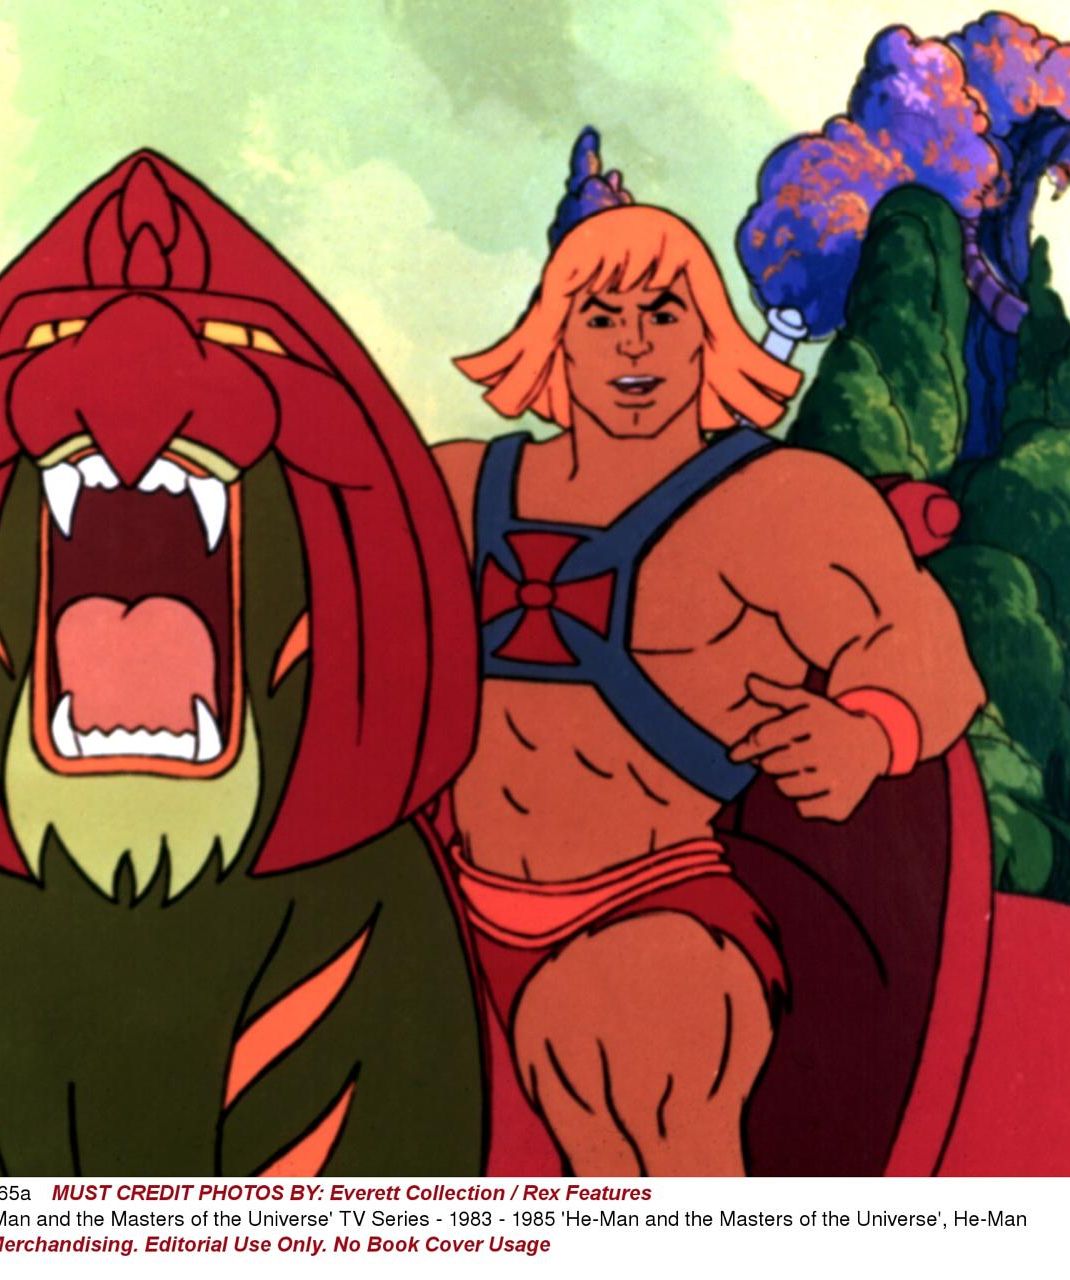 He-Man, Thundercats: '80s, '90s cartoons